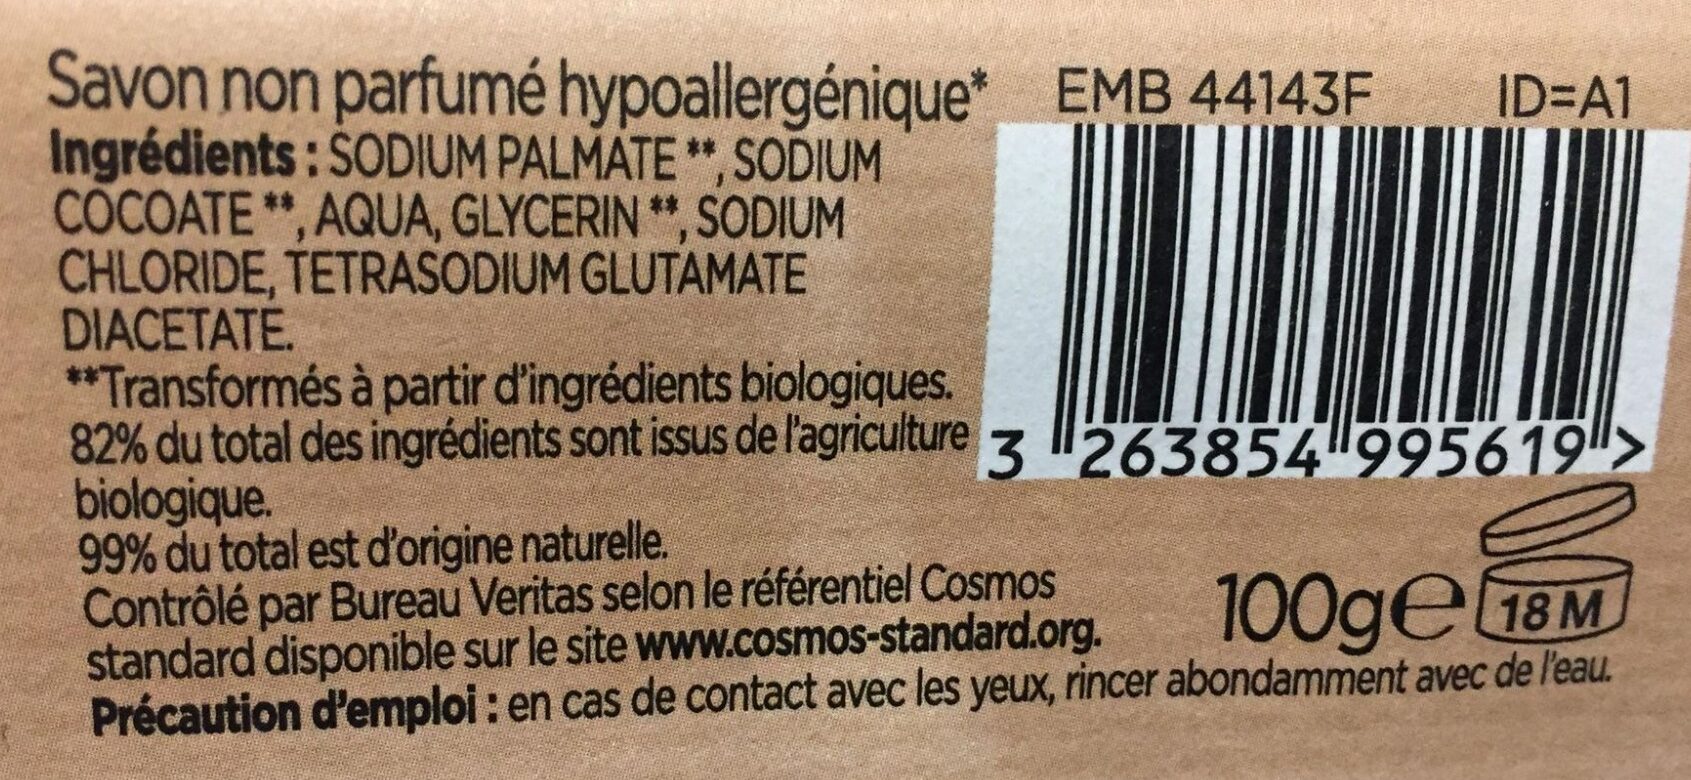 Savon non parfumé hypoallergénique - Ingredientes - fr